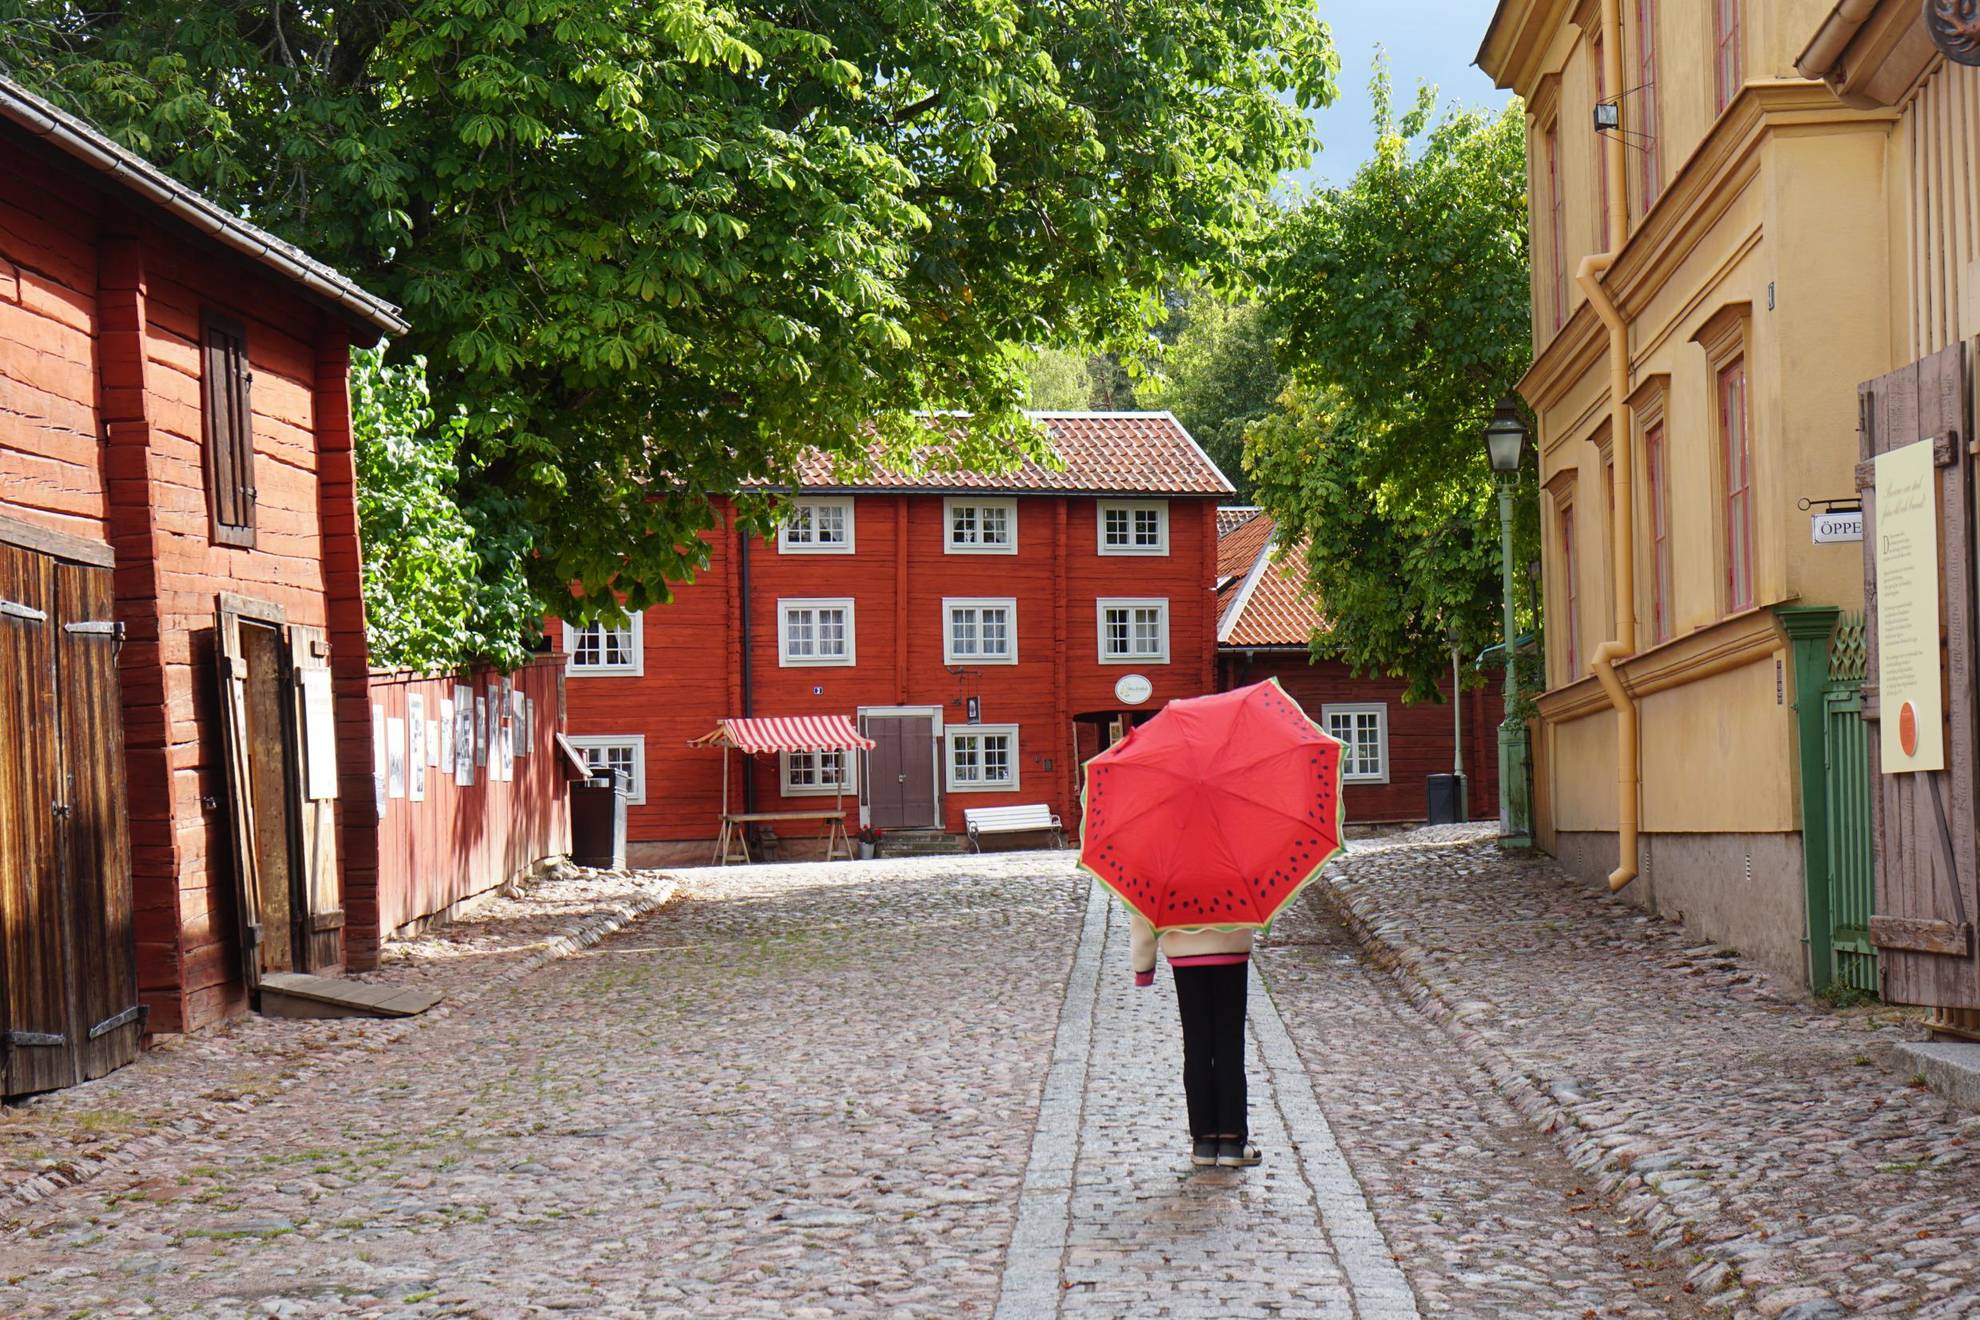 Une personne marche avec un parapluie rouge dans une rue pavée entre de vieilles maisons.